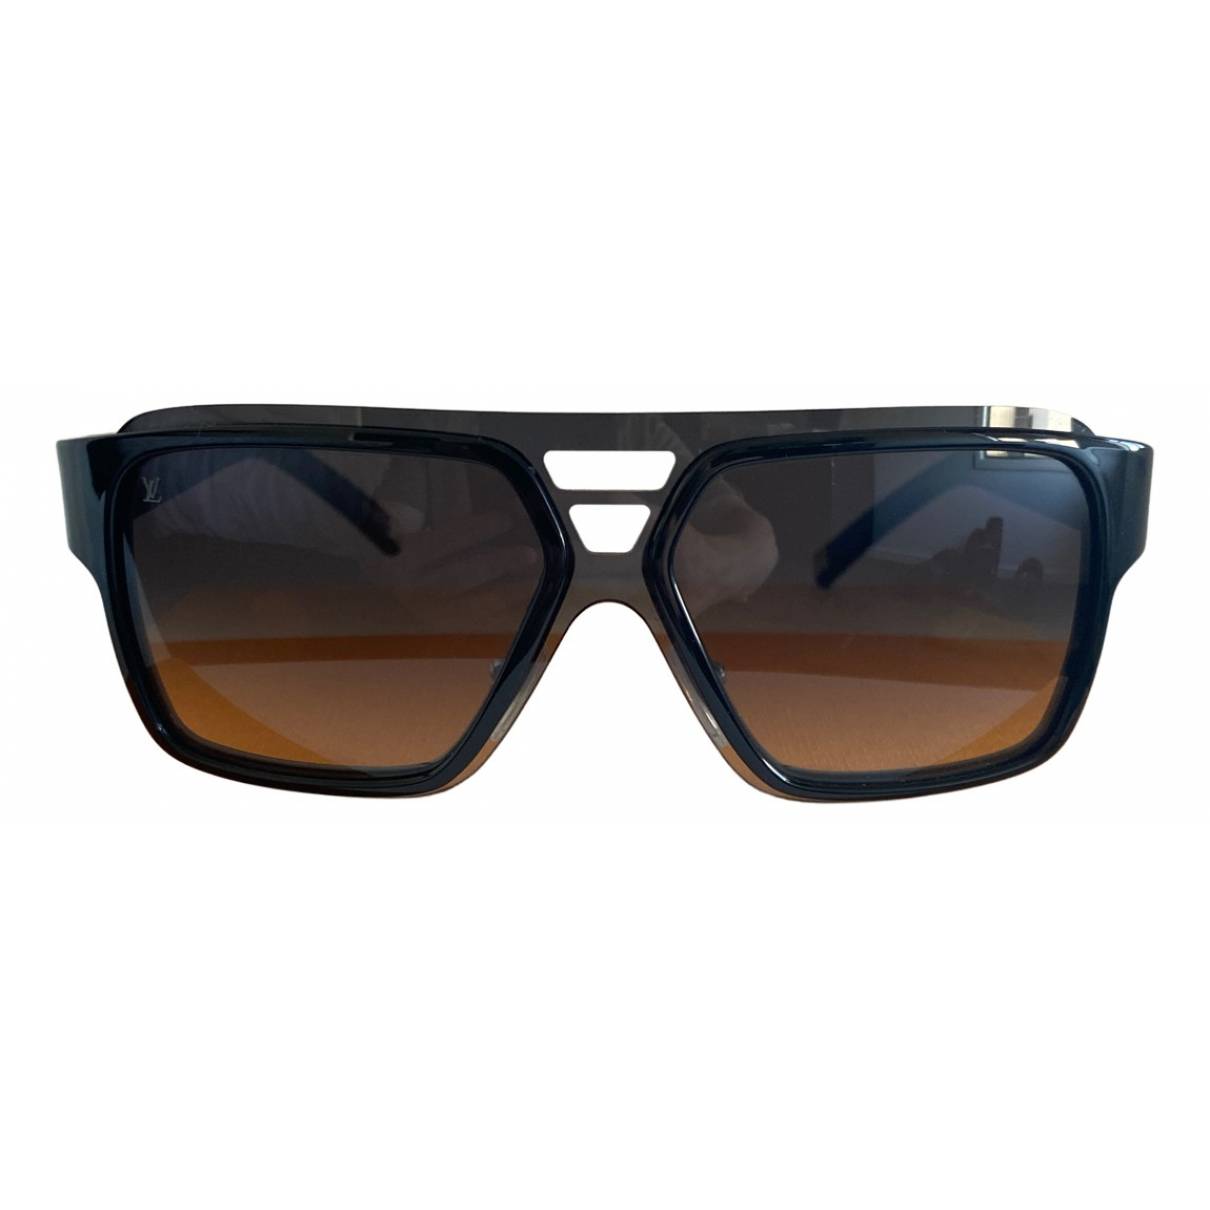 WOW** MEN'S LOUIS Vuitton Enigme GM Sunglasses Z0361U w/Dust Bag & Case!  $103.50 - PicClick